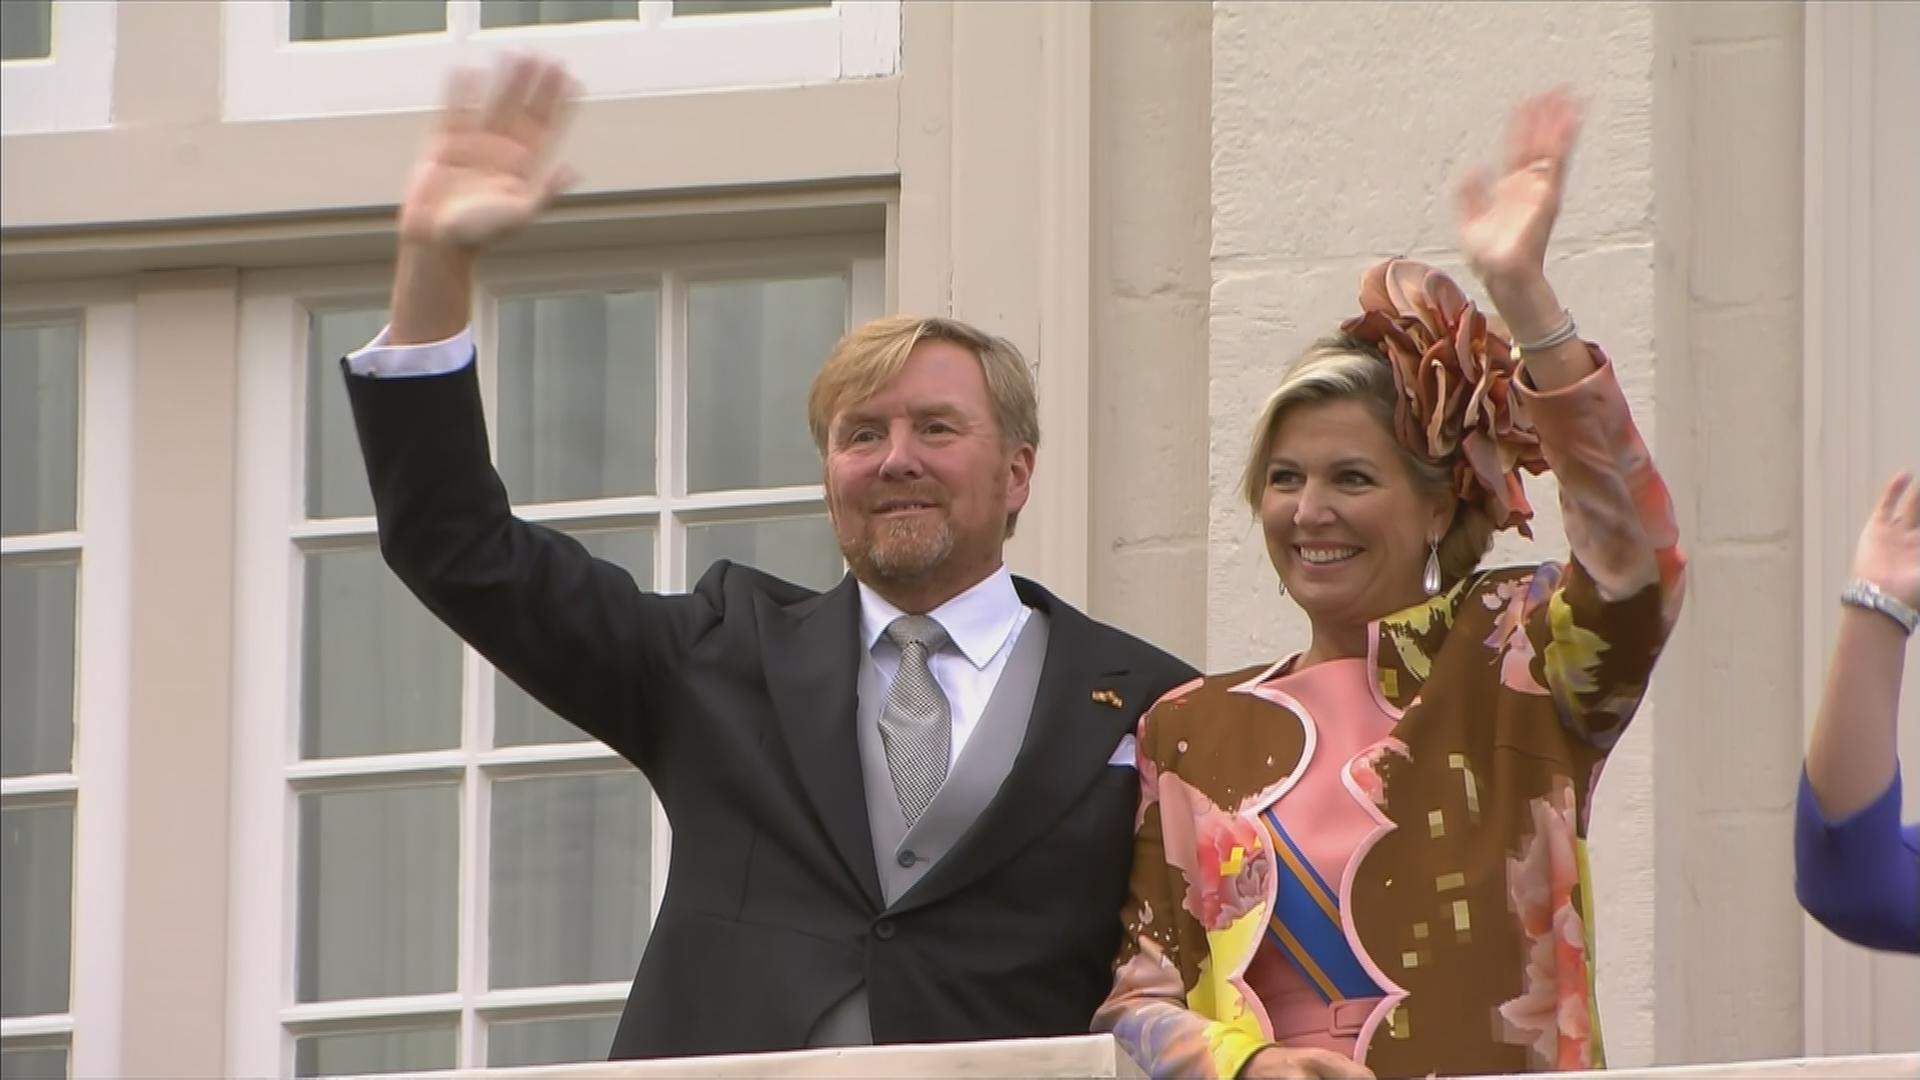 Máxima und König Willem-Alexander, das Königspaar der Niederlande, begrüßt royale Fans von einem Balkon